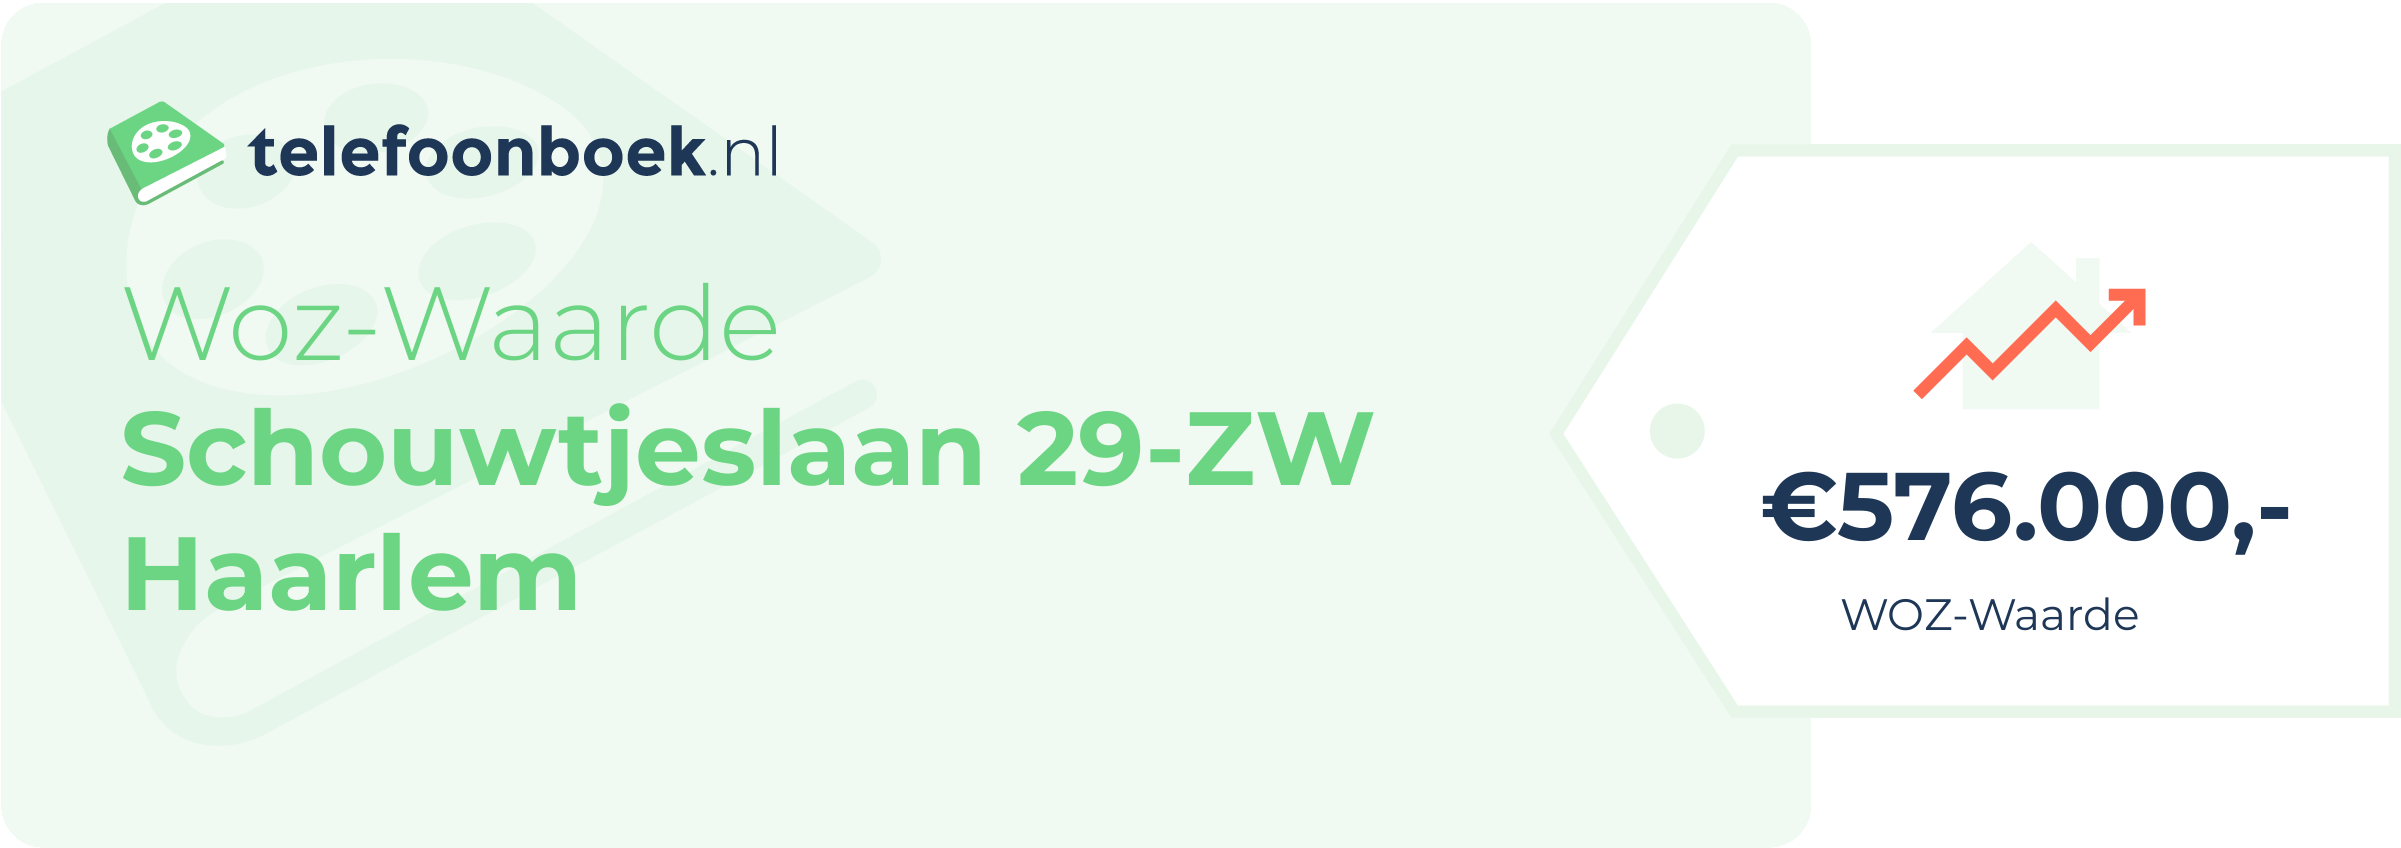 WOZ-waarde Schouwtjeslaan 29-ZW Haarlem